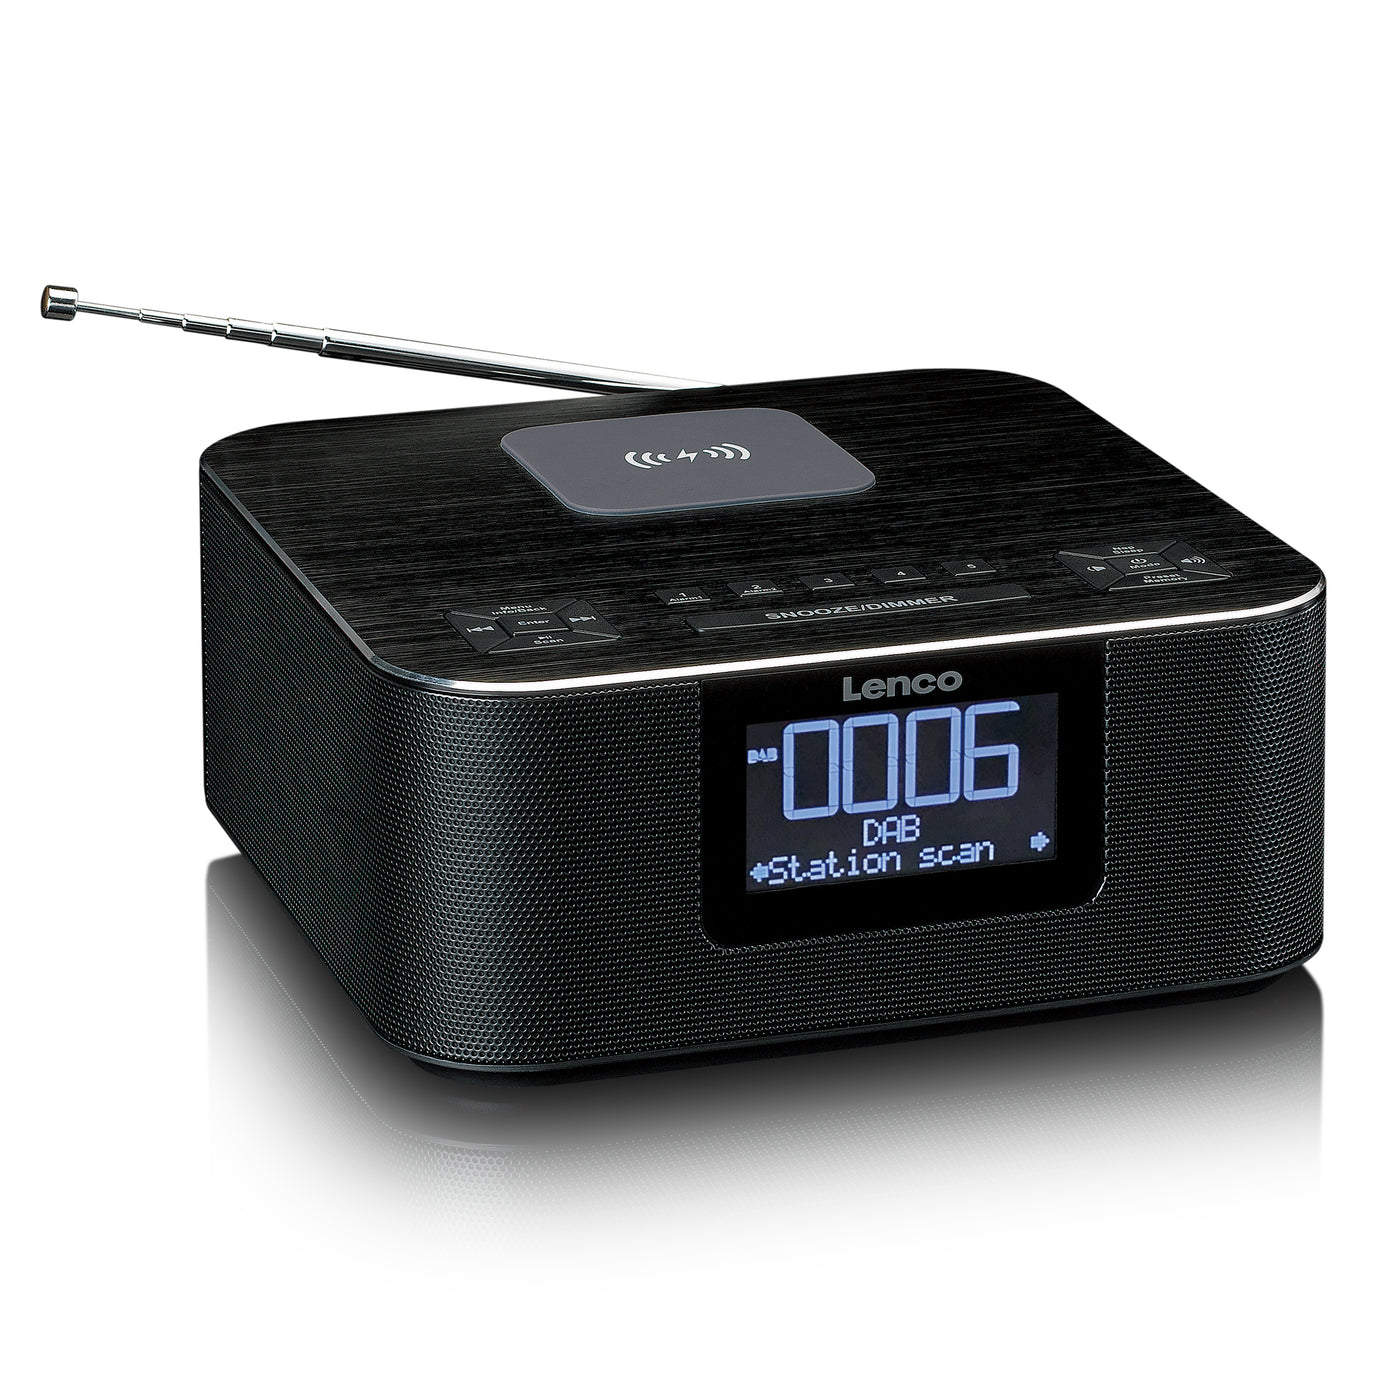 LENCO CR-650BK - Radiobudzik DAB+/FM z Bluetooth® i ładowaniem bezprzewodowym, czarny